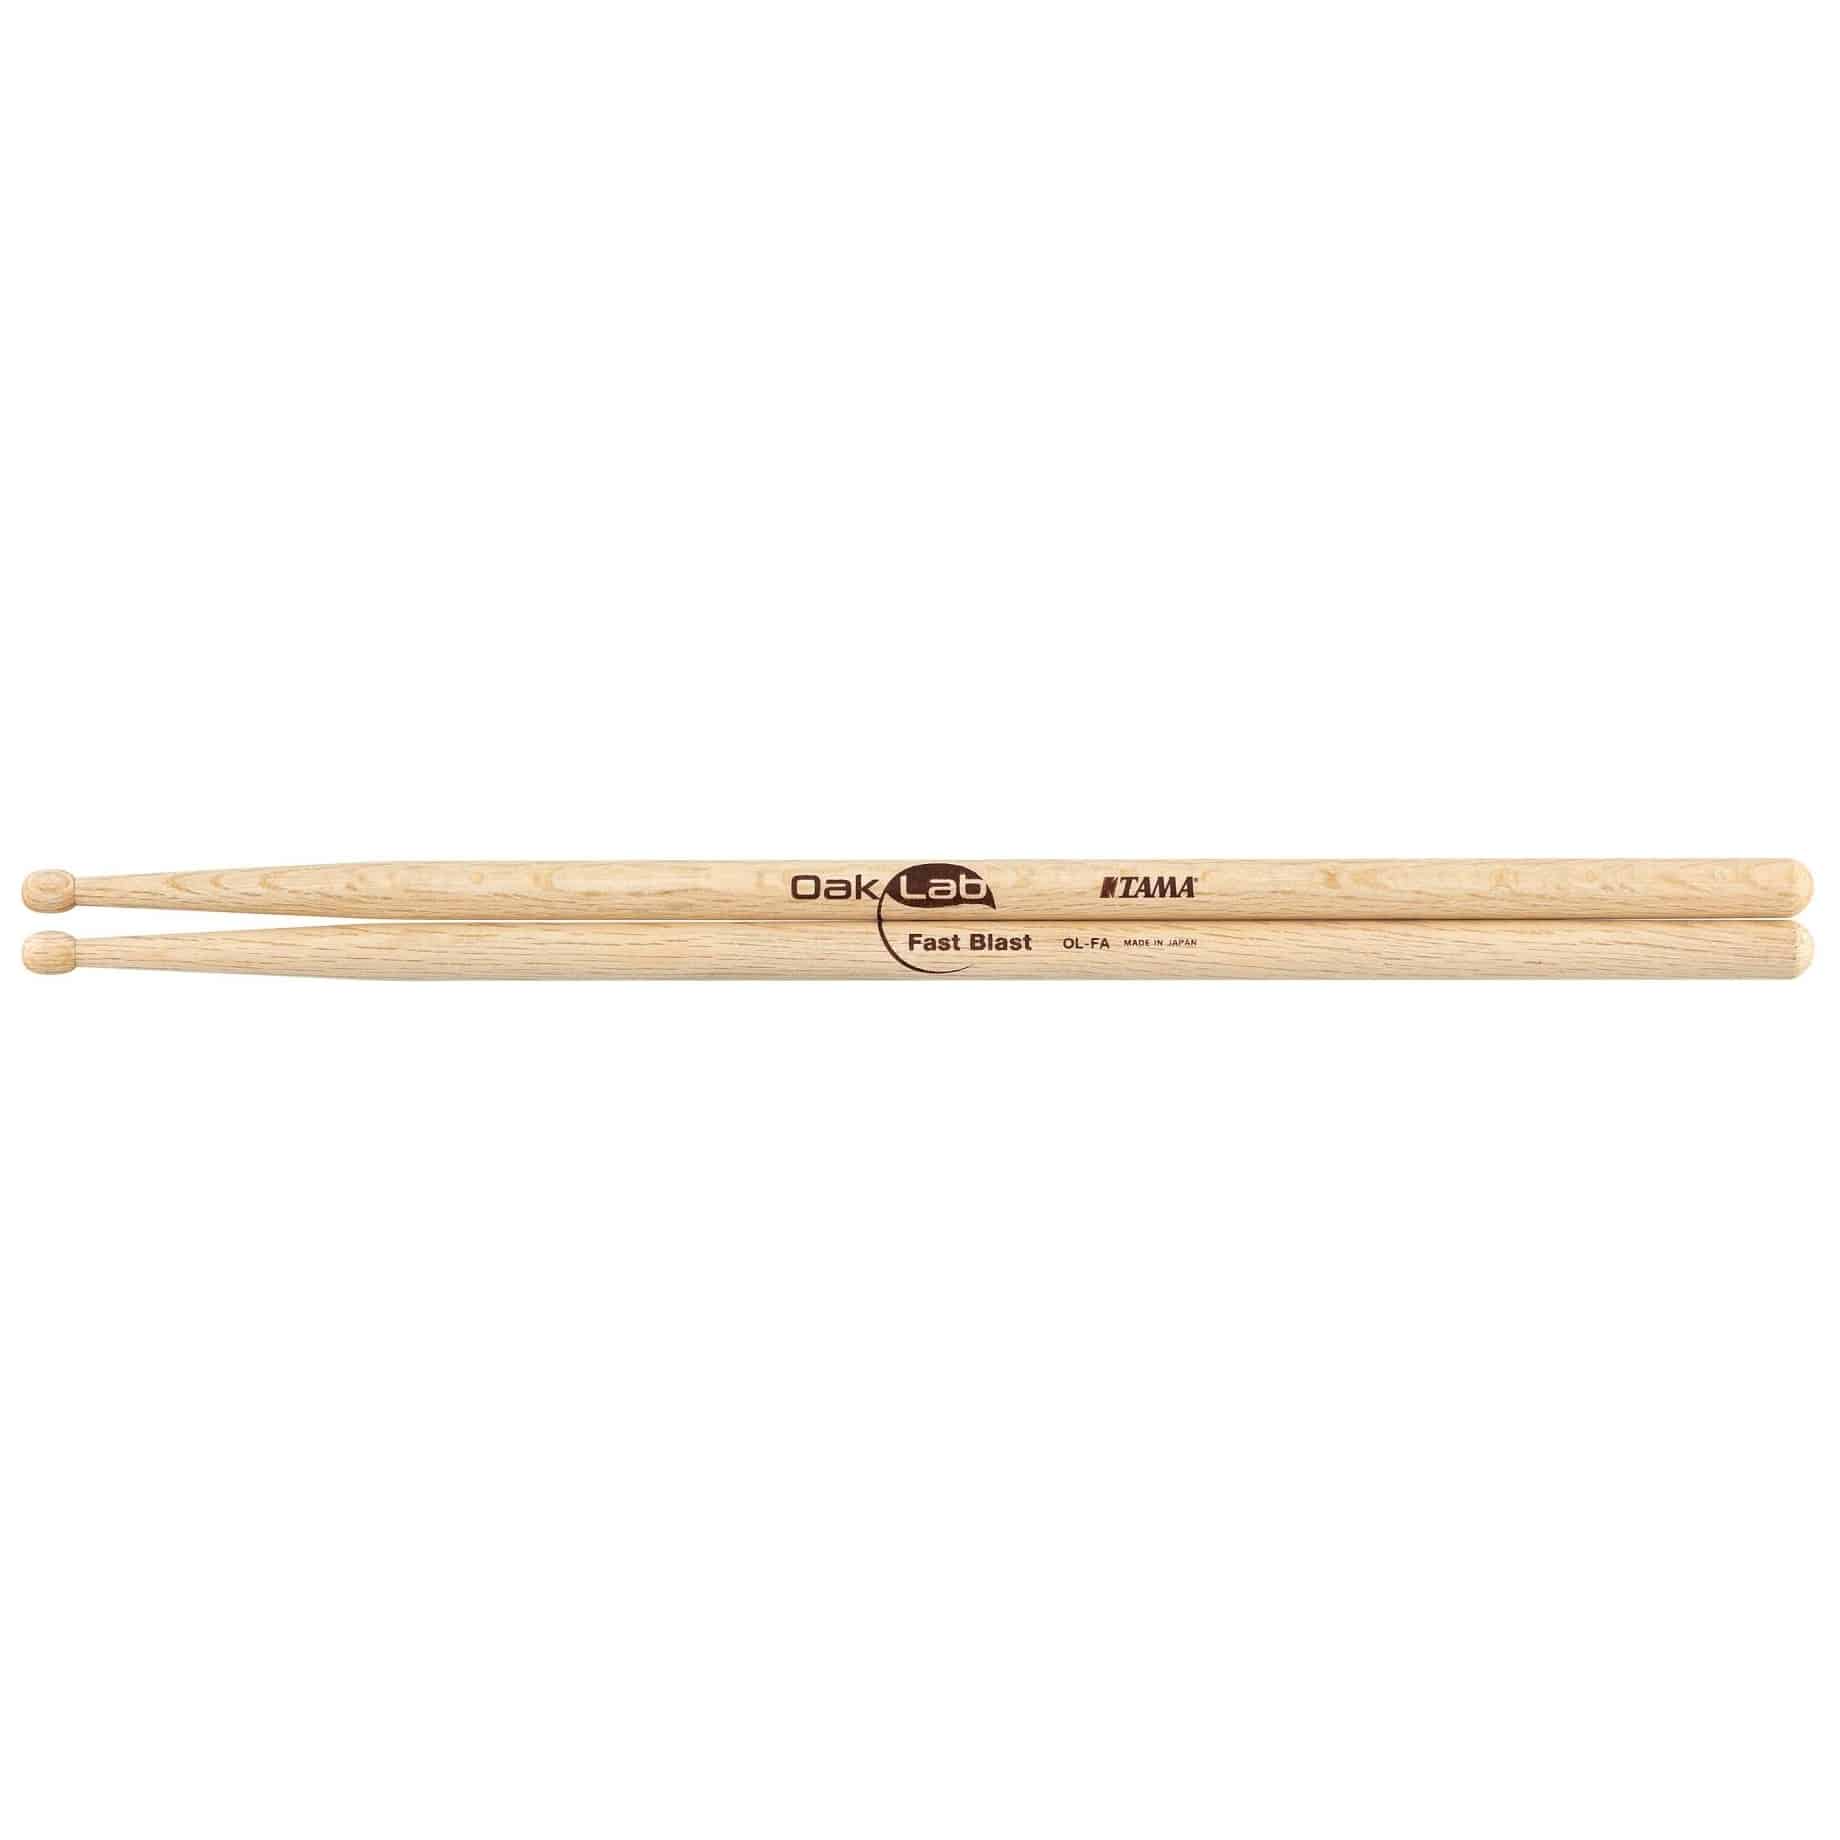 Tama Oak Lab Series Drumsticks fast blast